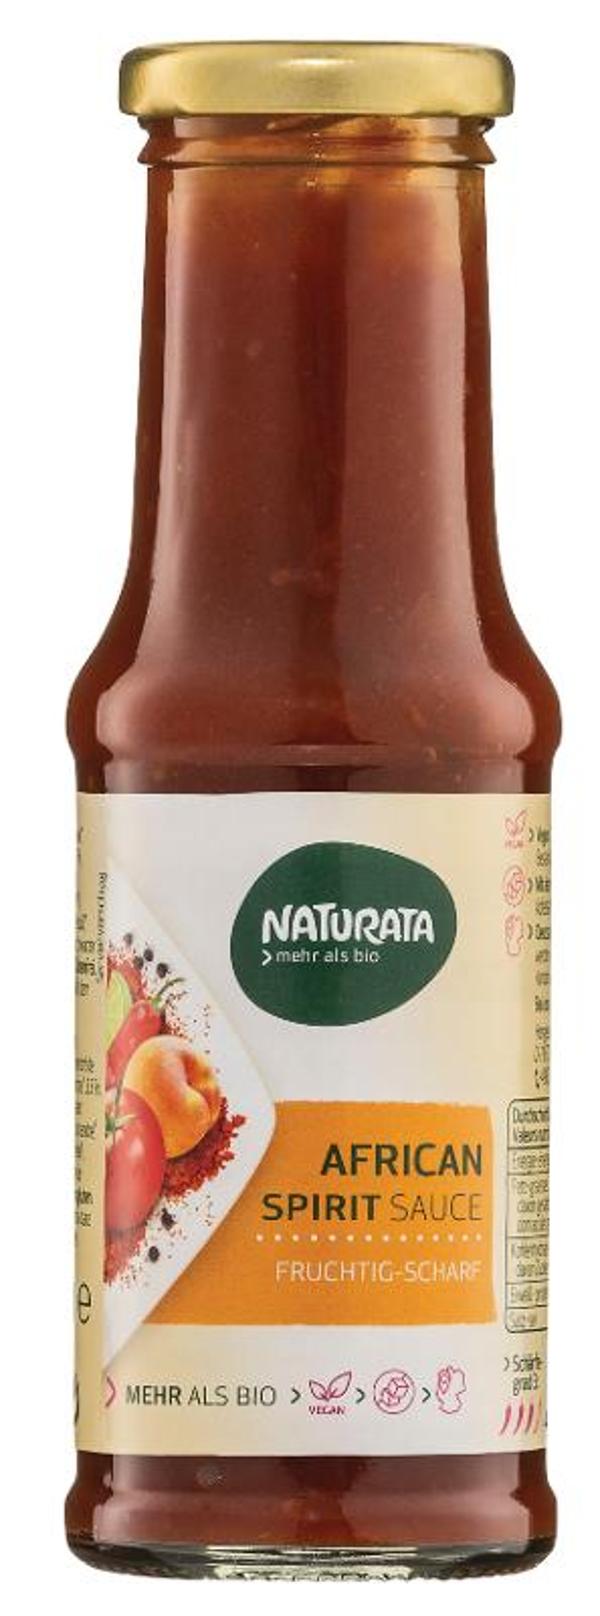 Produktfoto zu African Spirit Sauce, 250 ml